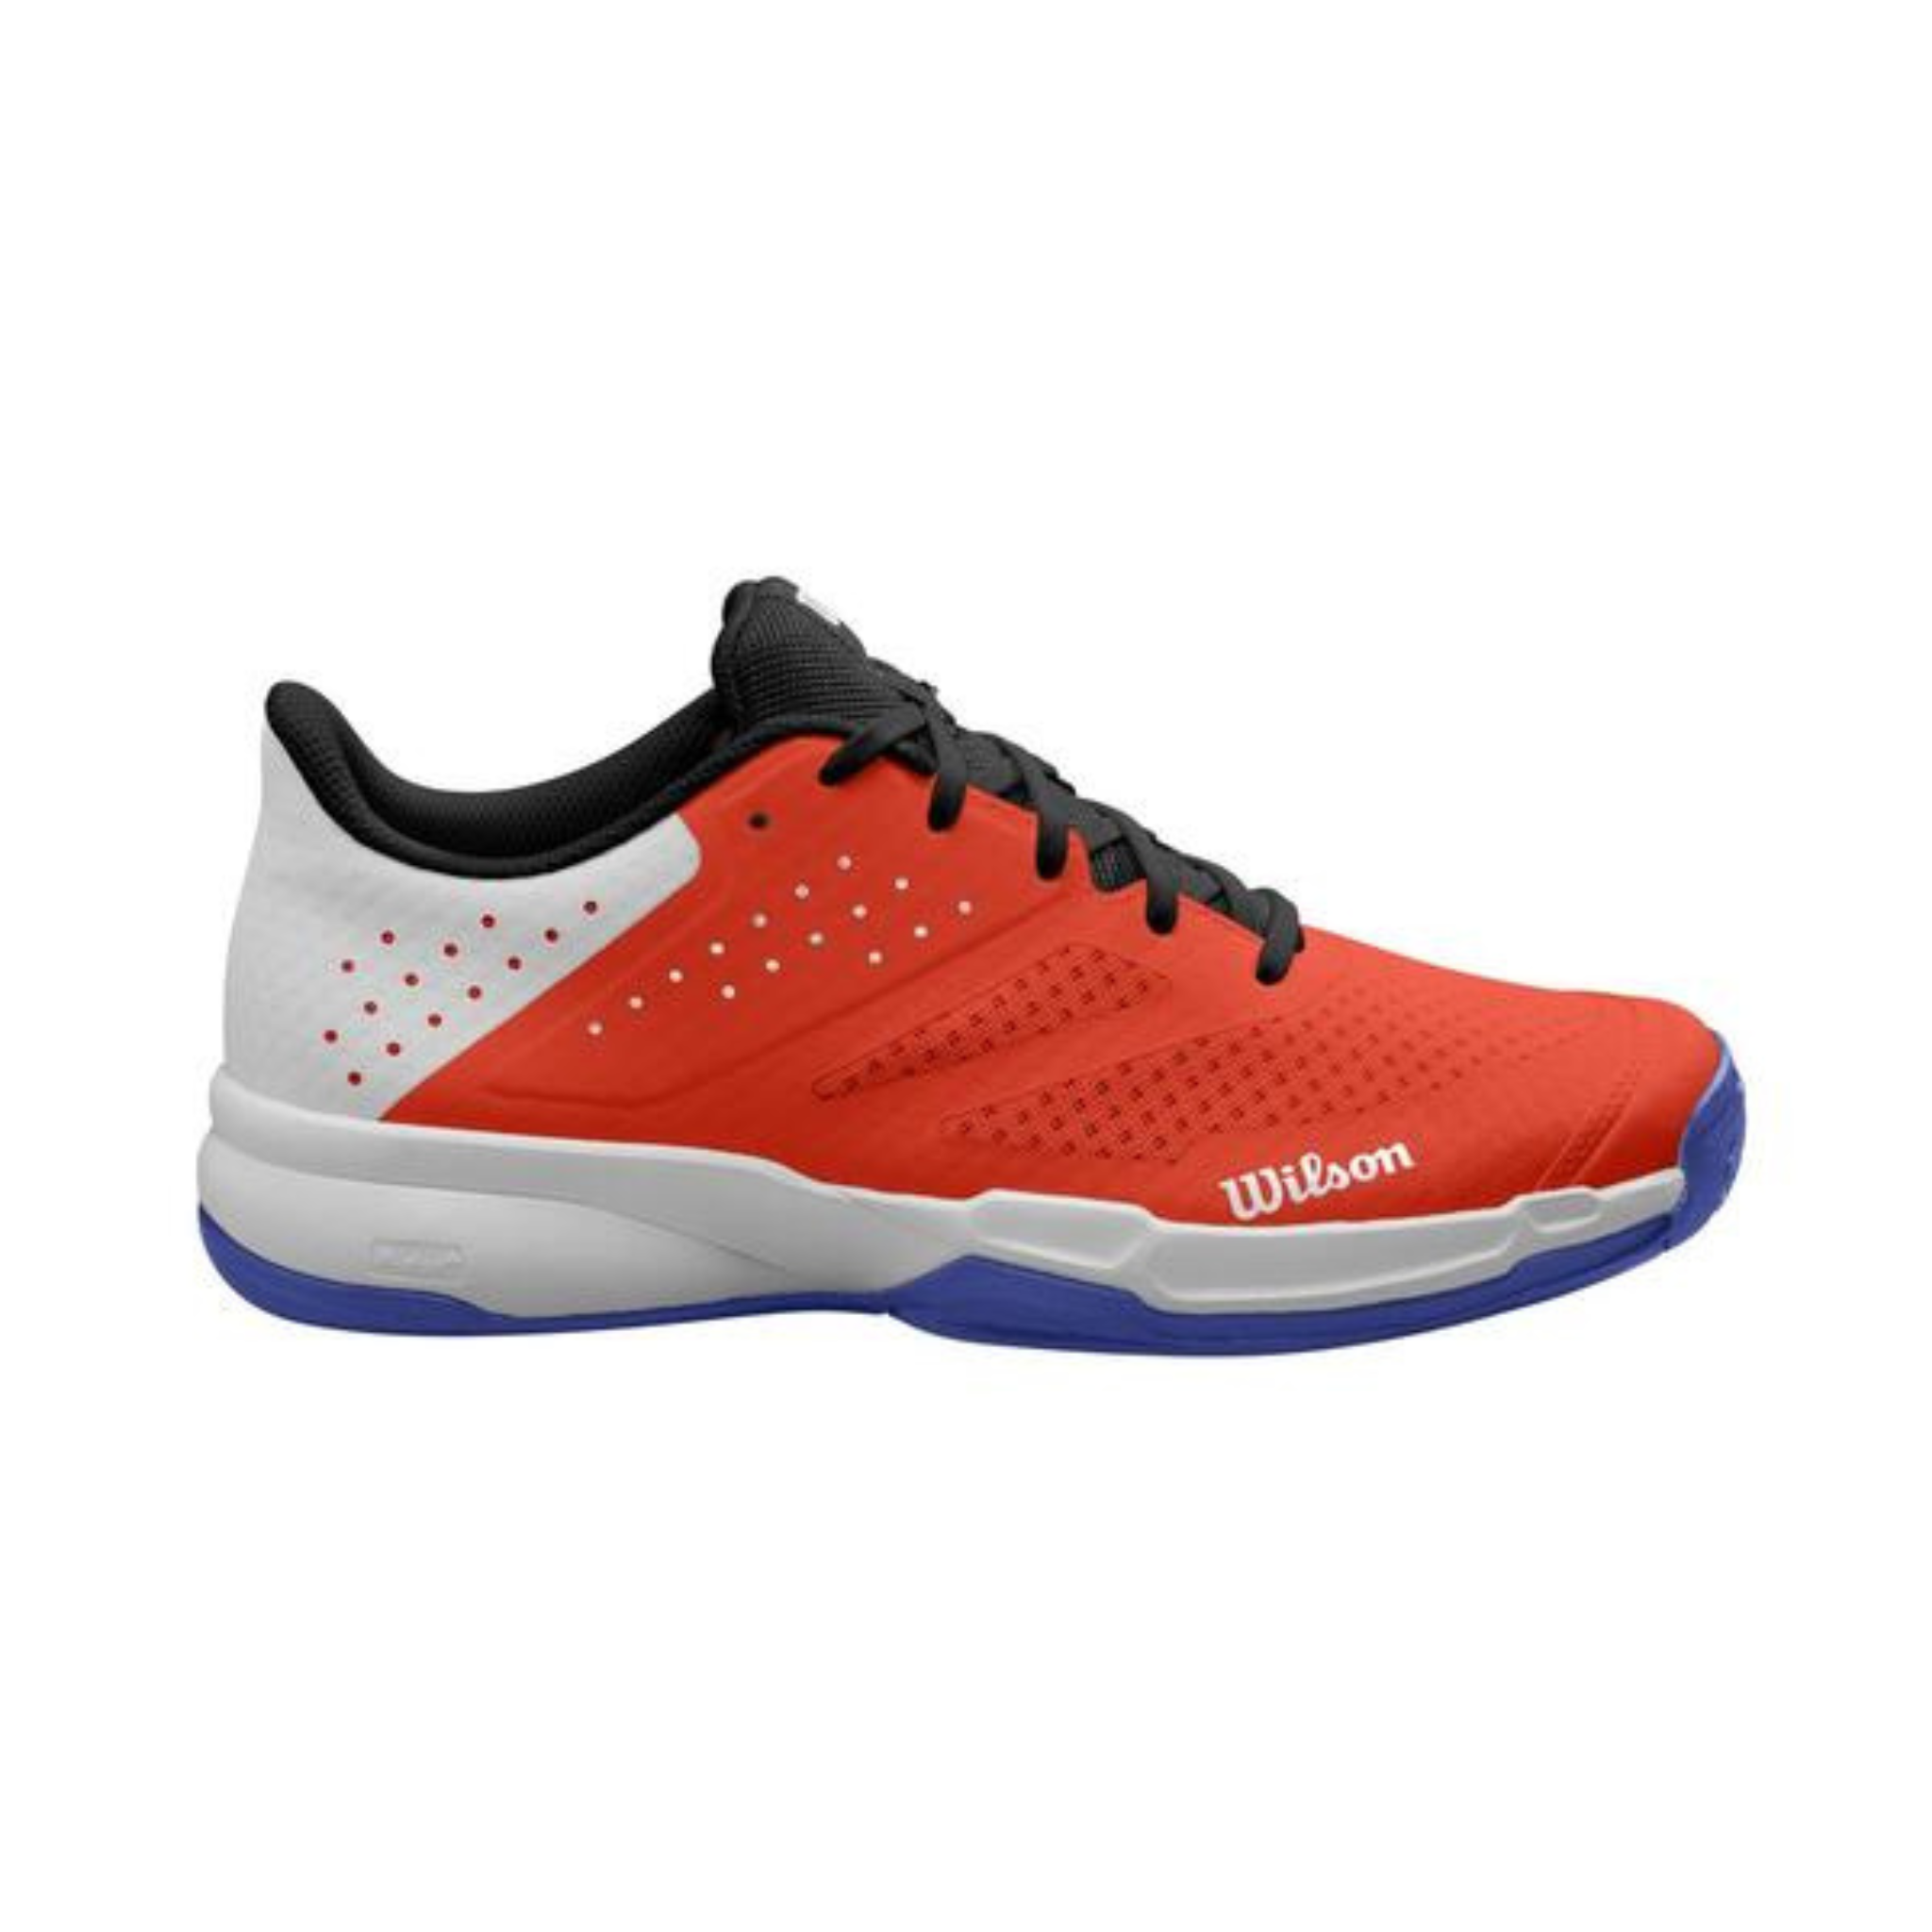 Wilson Kaos Stroke 2.0 Men's tennis shoes > White/Orange